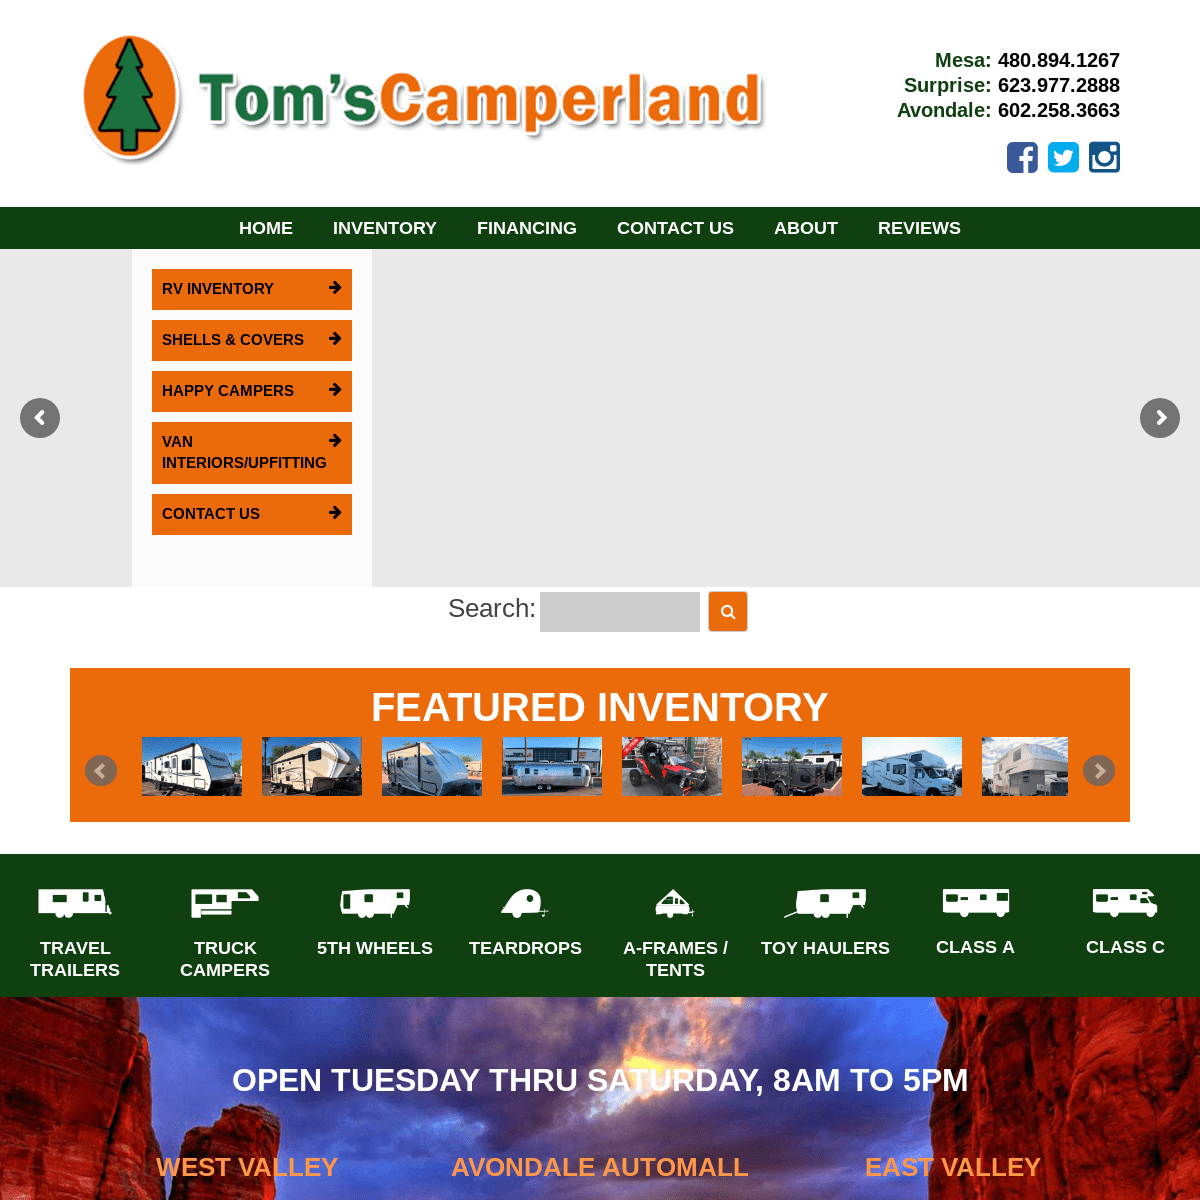 Home - Tom's Camperland